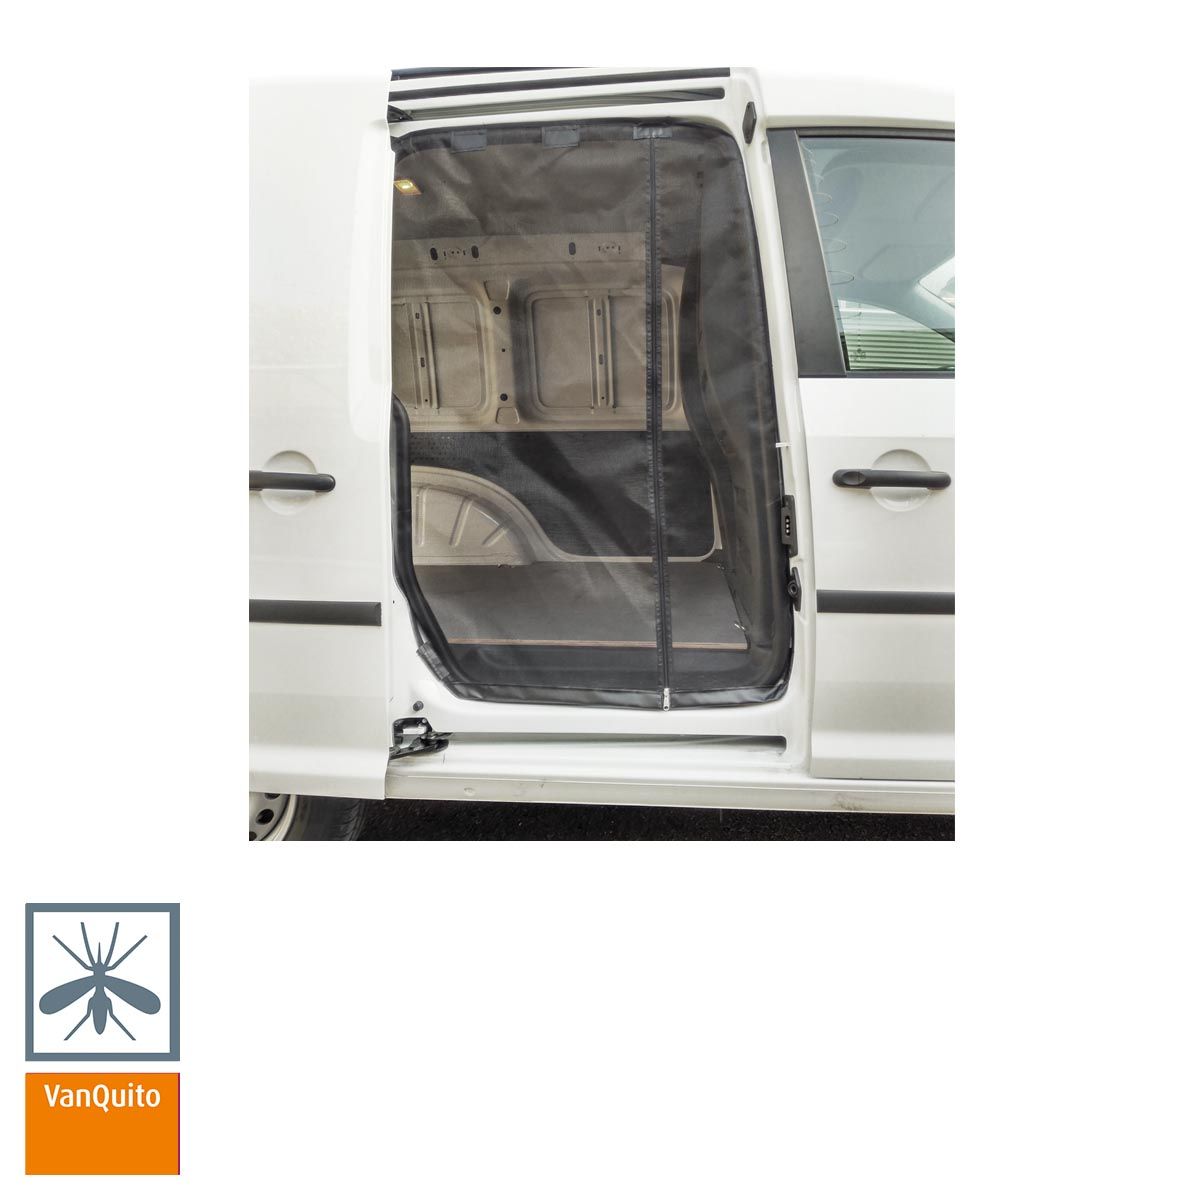 Schiebetürenmoskitonetz "Reißverschluss" für VW Caddy 4 (ab 2014) / Insektenschutz VanQuito - Beifahrerseite Standard